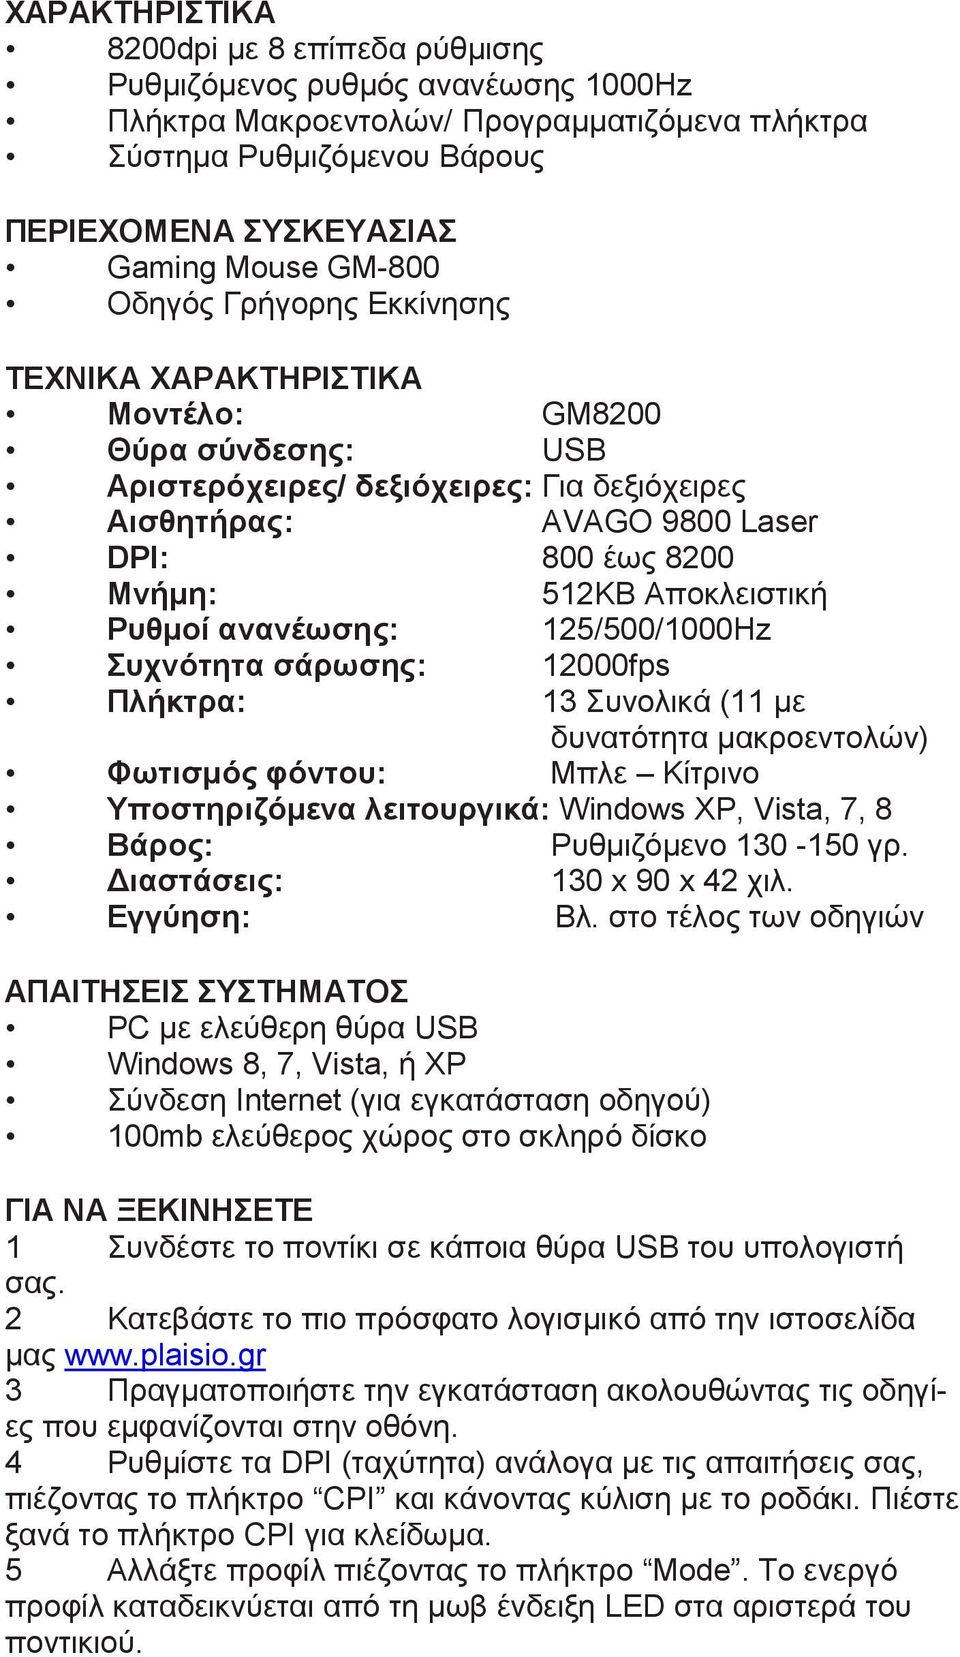 Αποκλειστική Ρυθμοί ανανέωσης: 125/500/1000Hz Συχνότητα σάρωσης: 12000fps Πλήκτρα: 13 Συνολικά (11 με δυνατότητα μακροεντολών) Φωτισμός φόντου: Μπλε Κίτρινο Υποστηριζόμενα λειτουργικά: Windows XP,